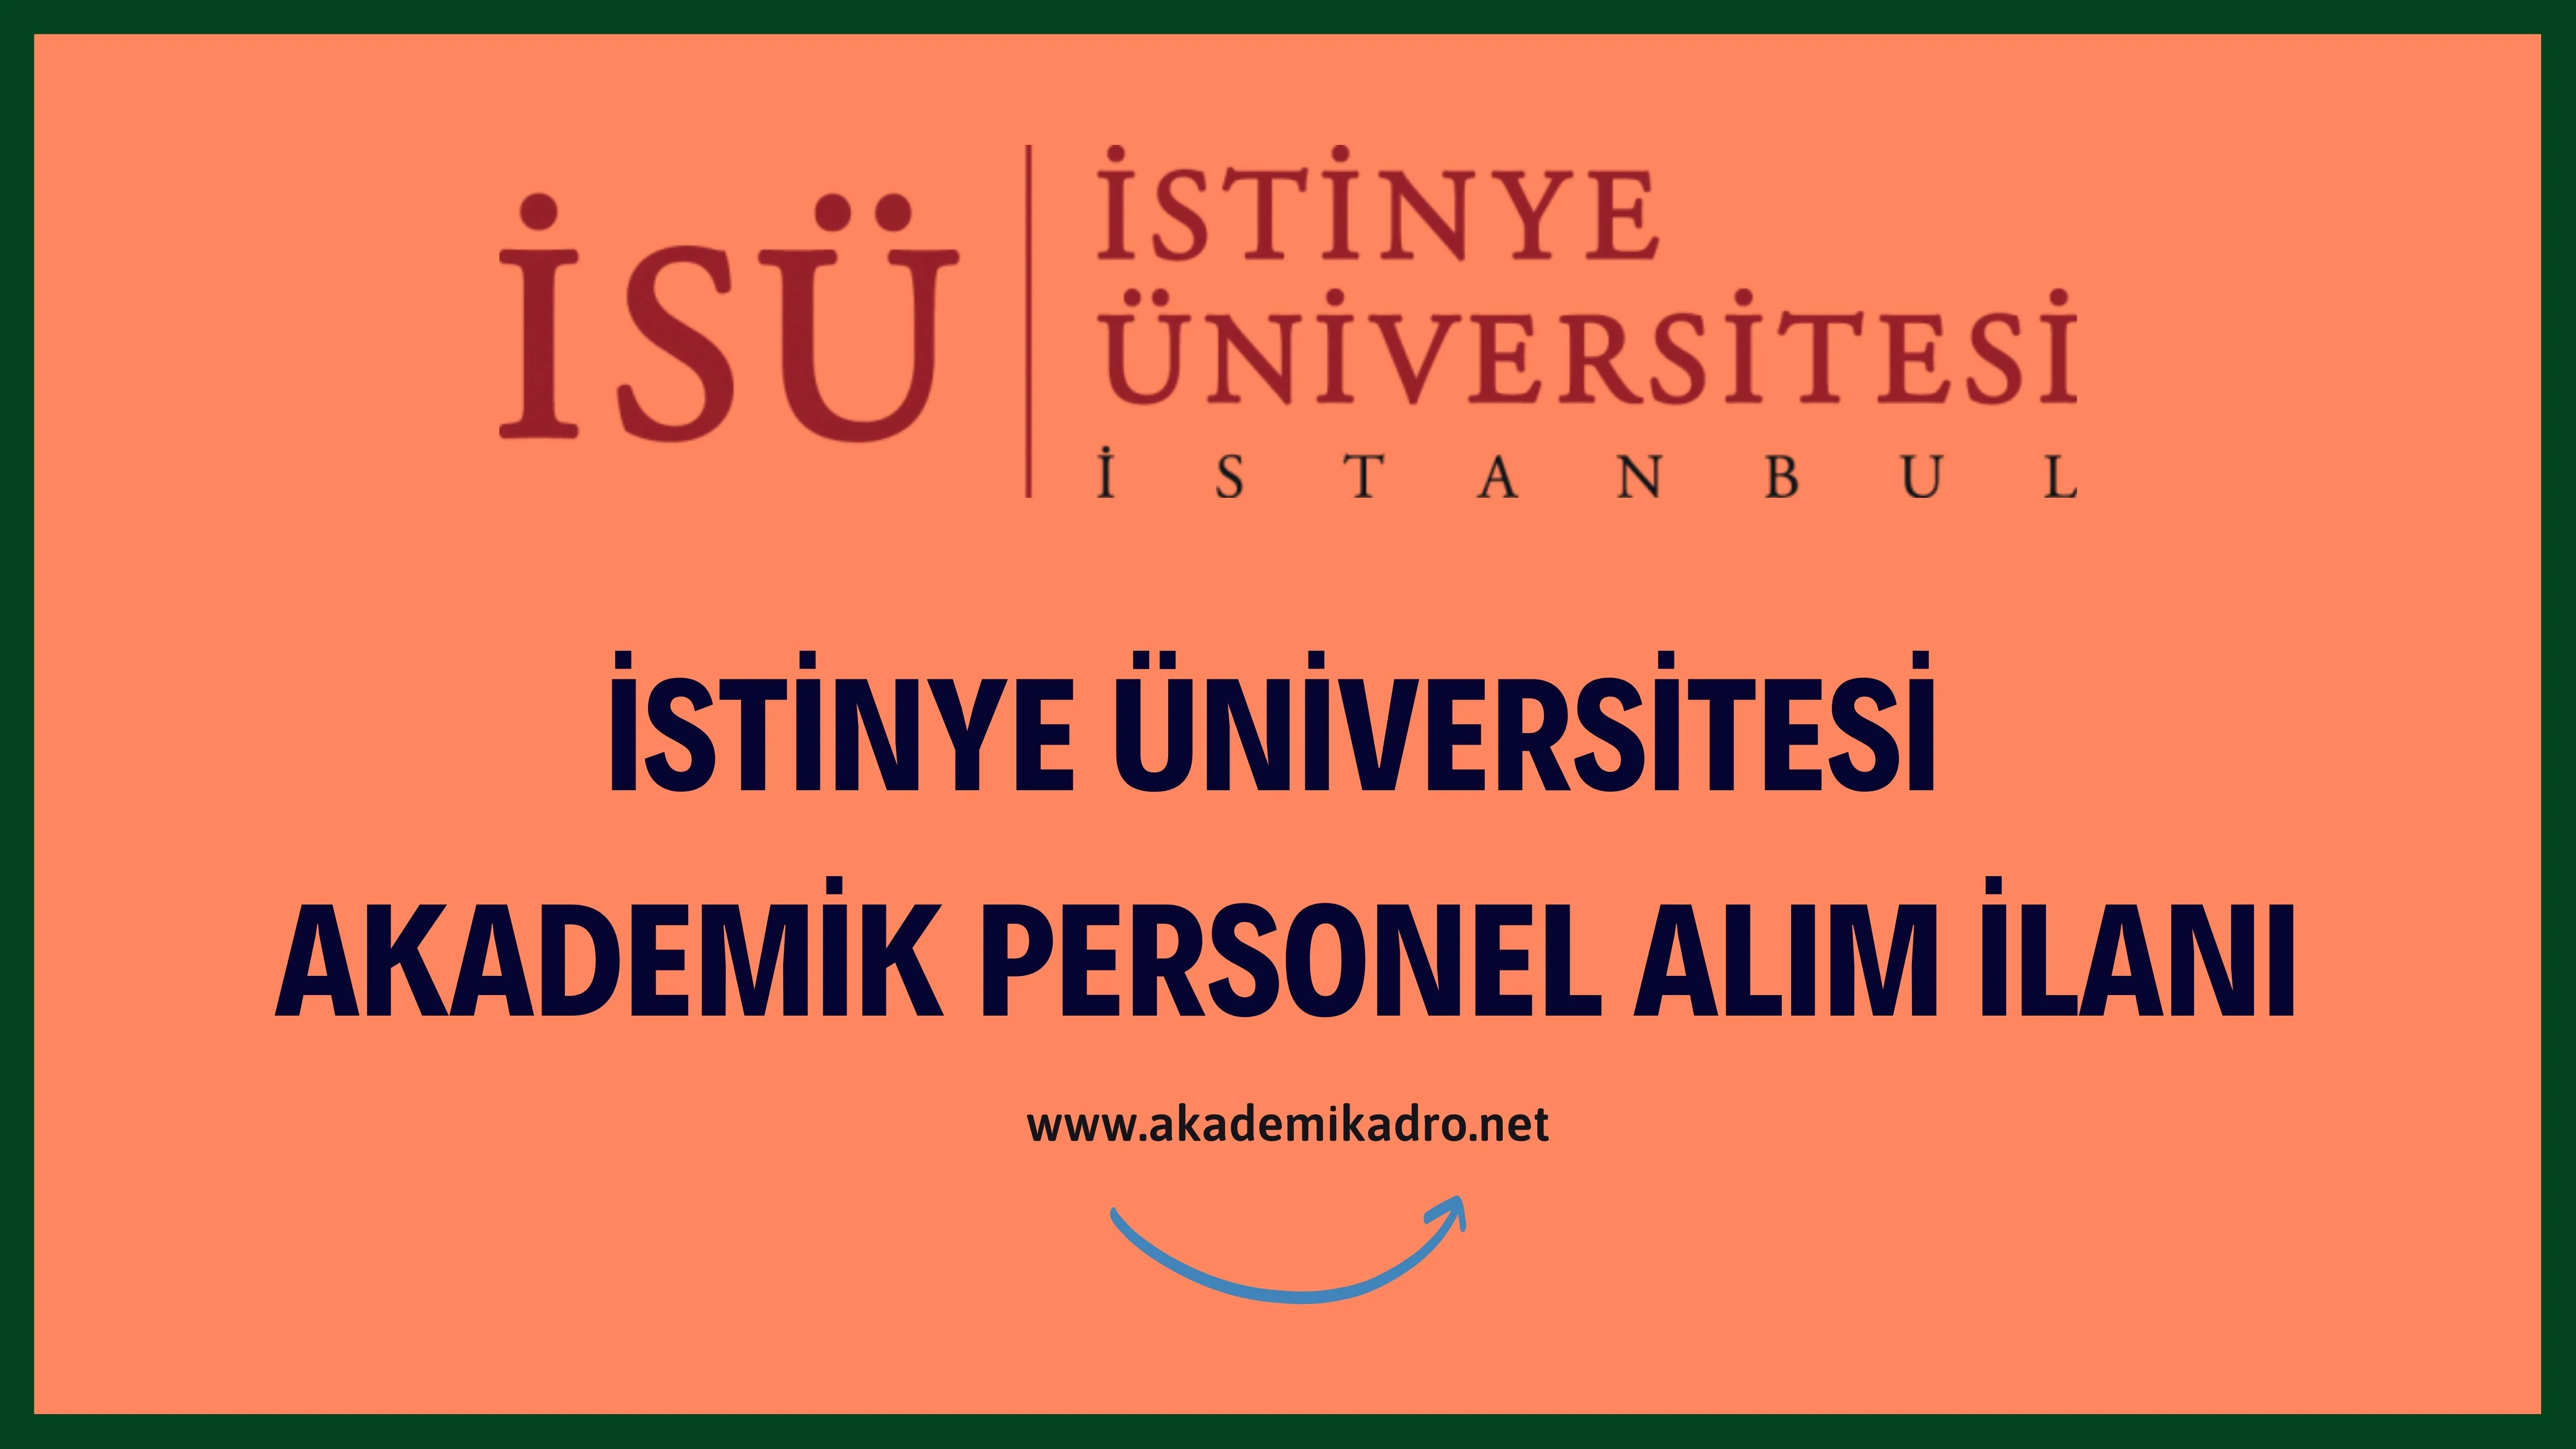 İstinye Üniversitesi 5 akademik personel alacak.